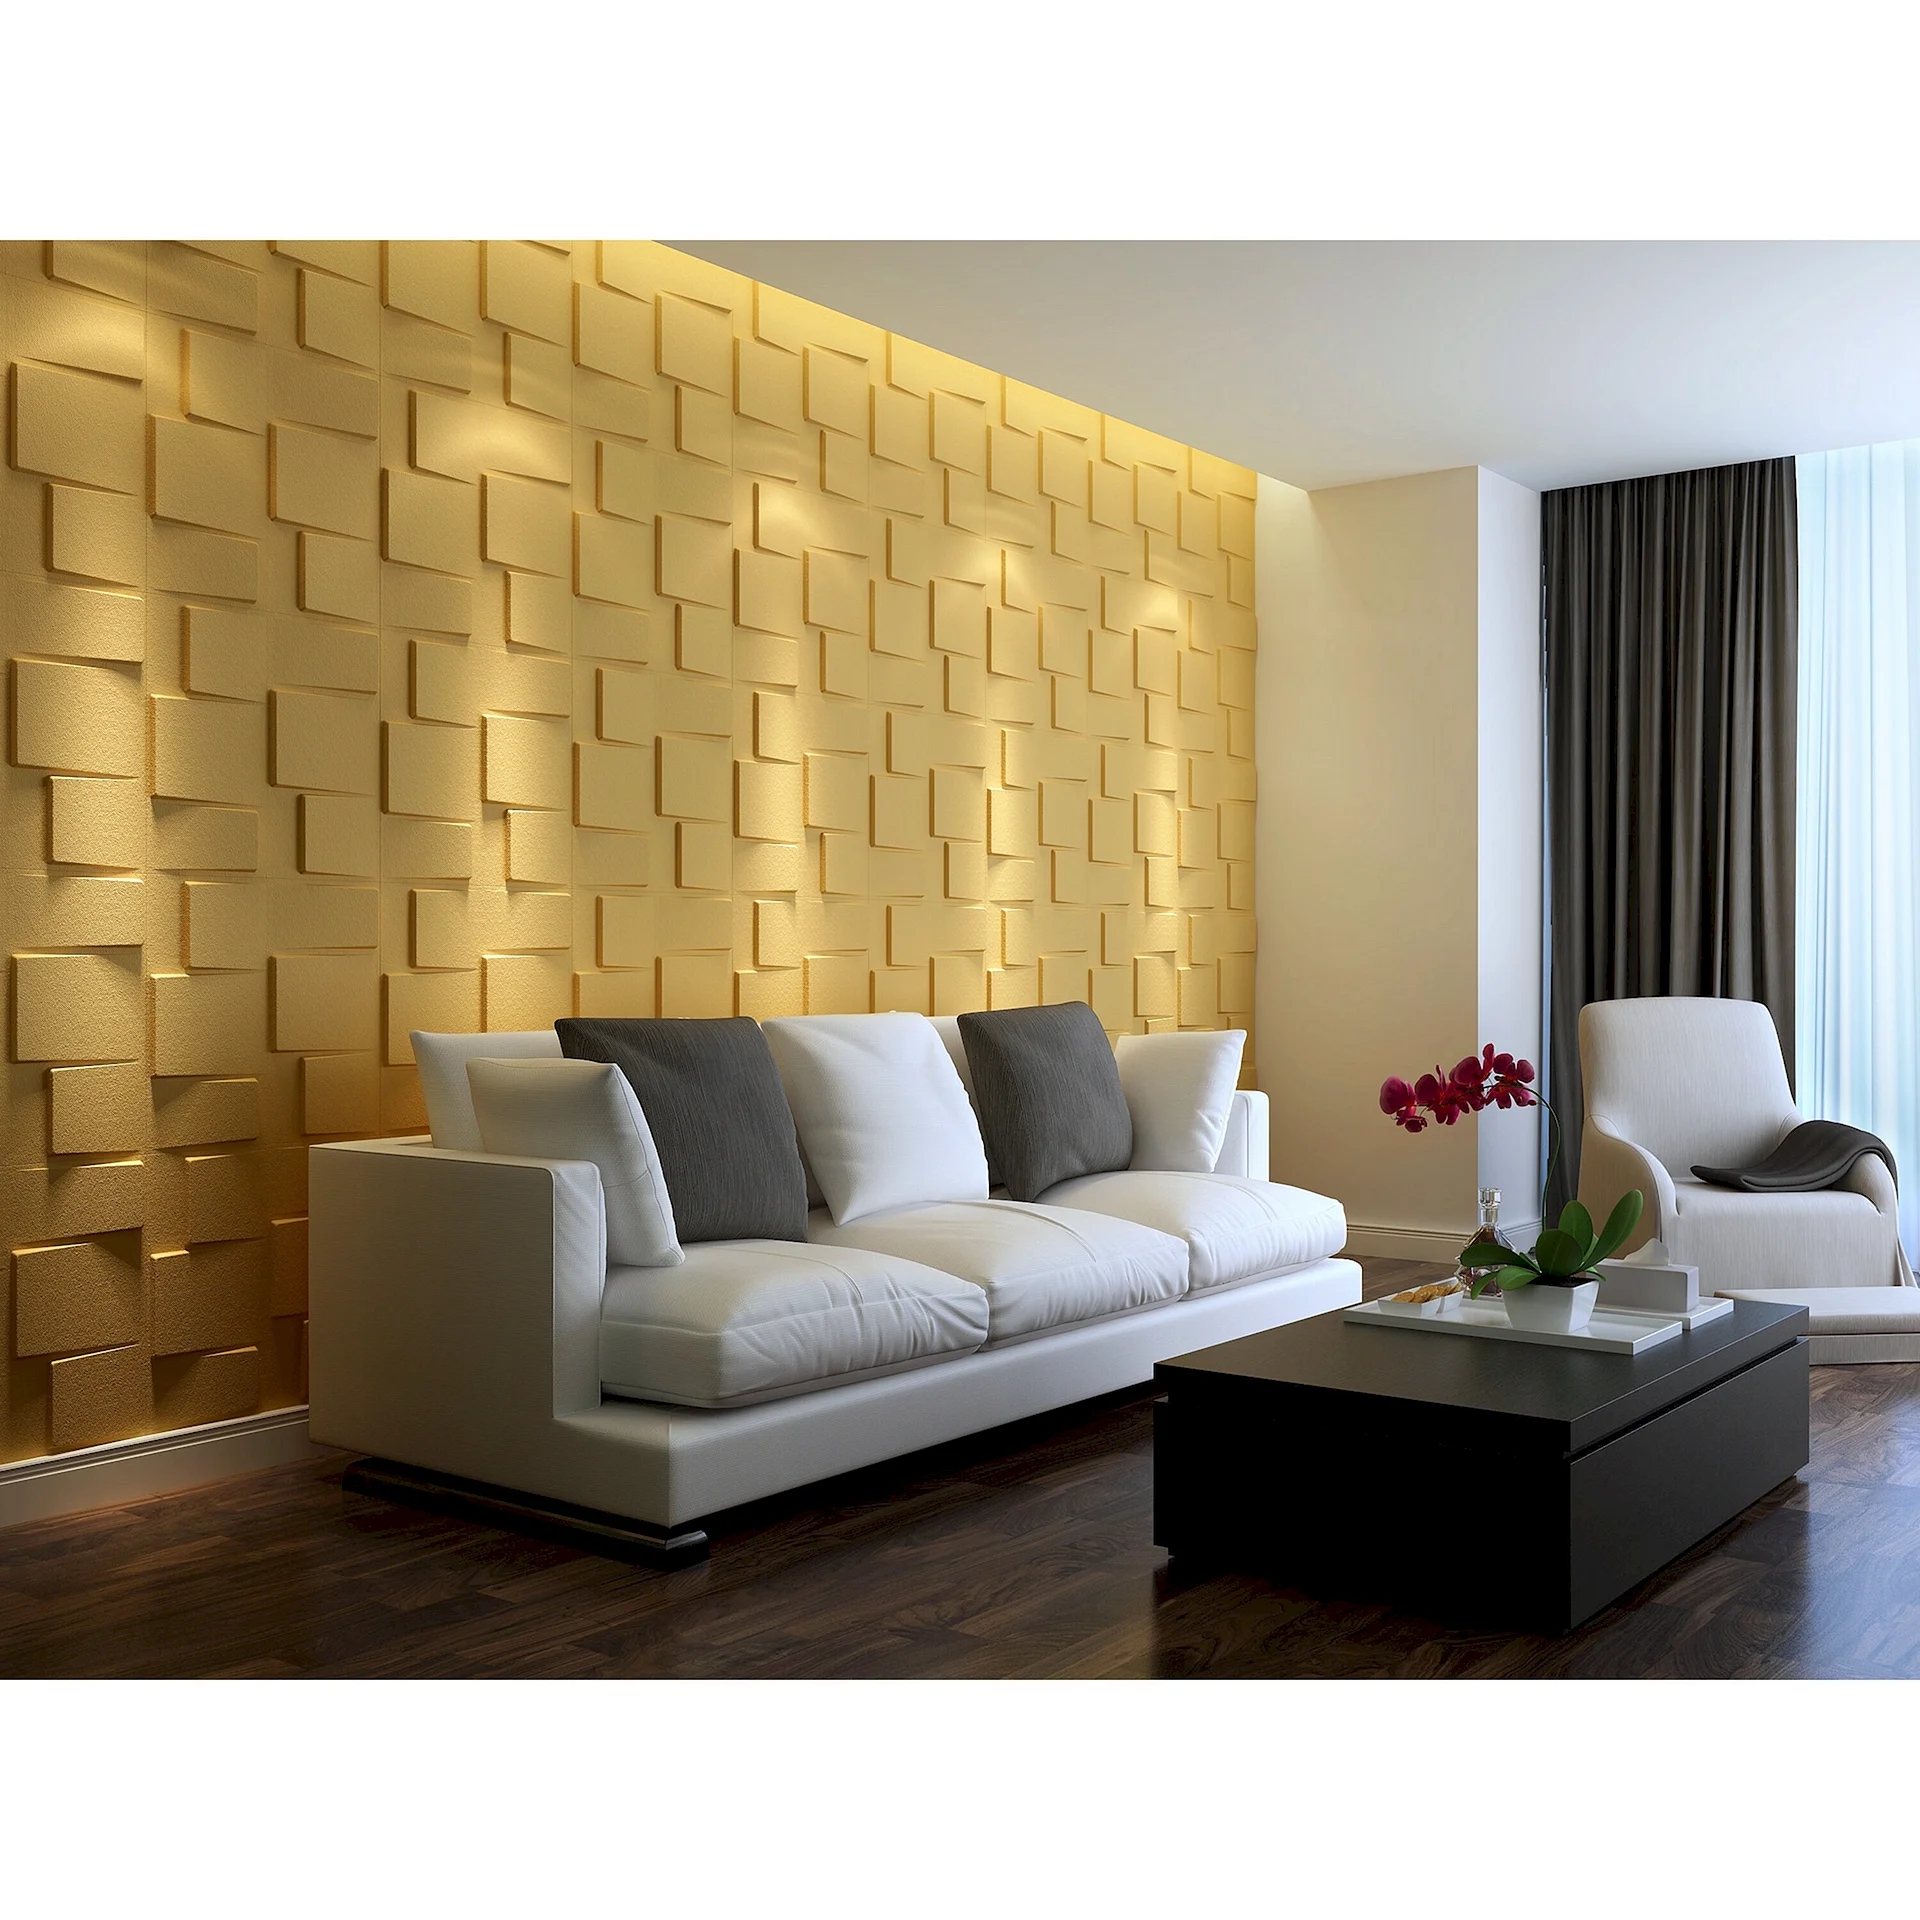 3D Wall Panel Tiles Wallpaper